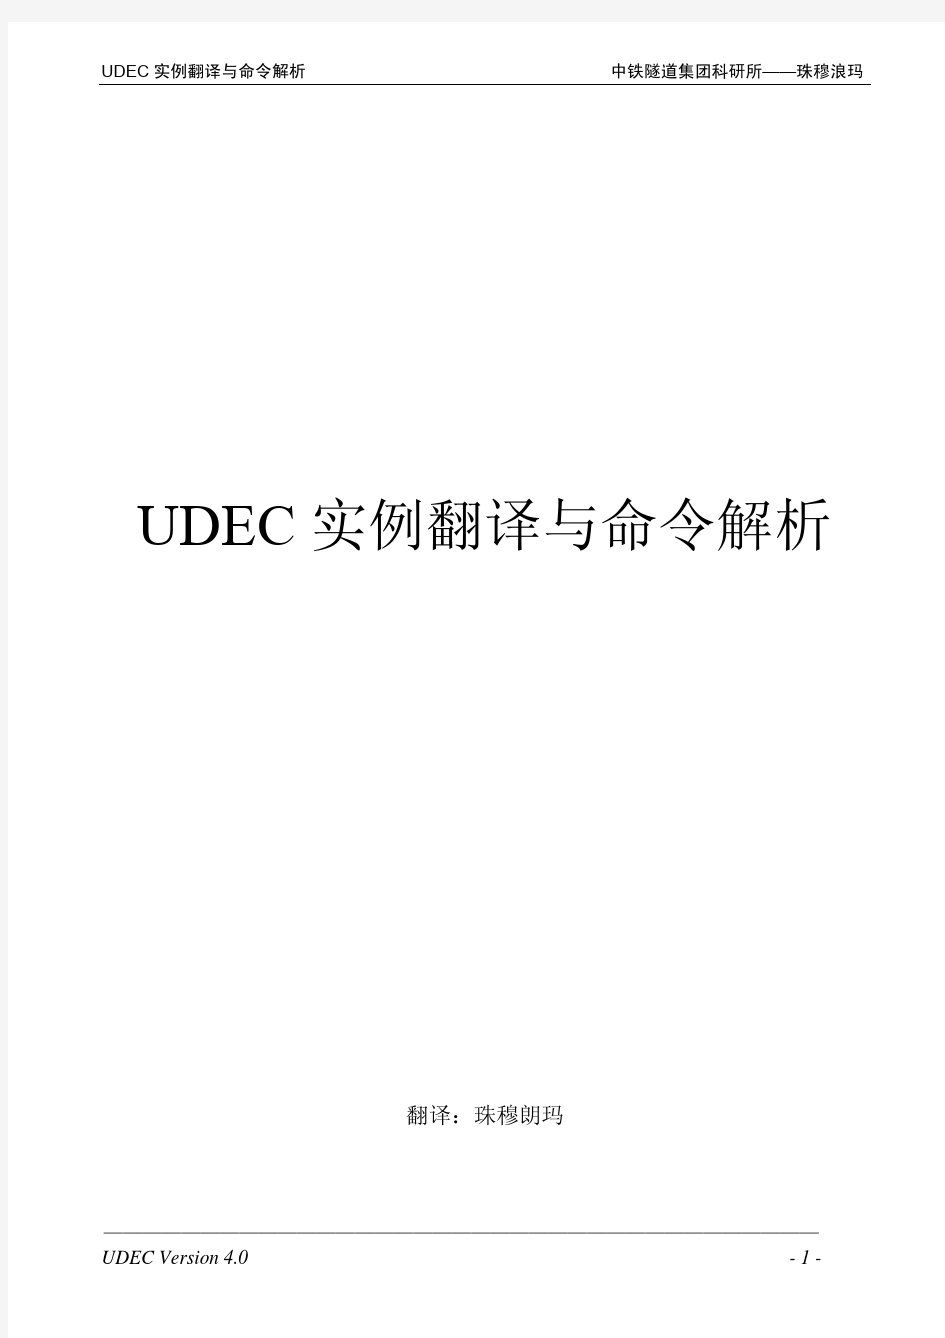 UDEC实例翻译与命令解析